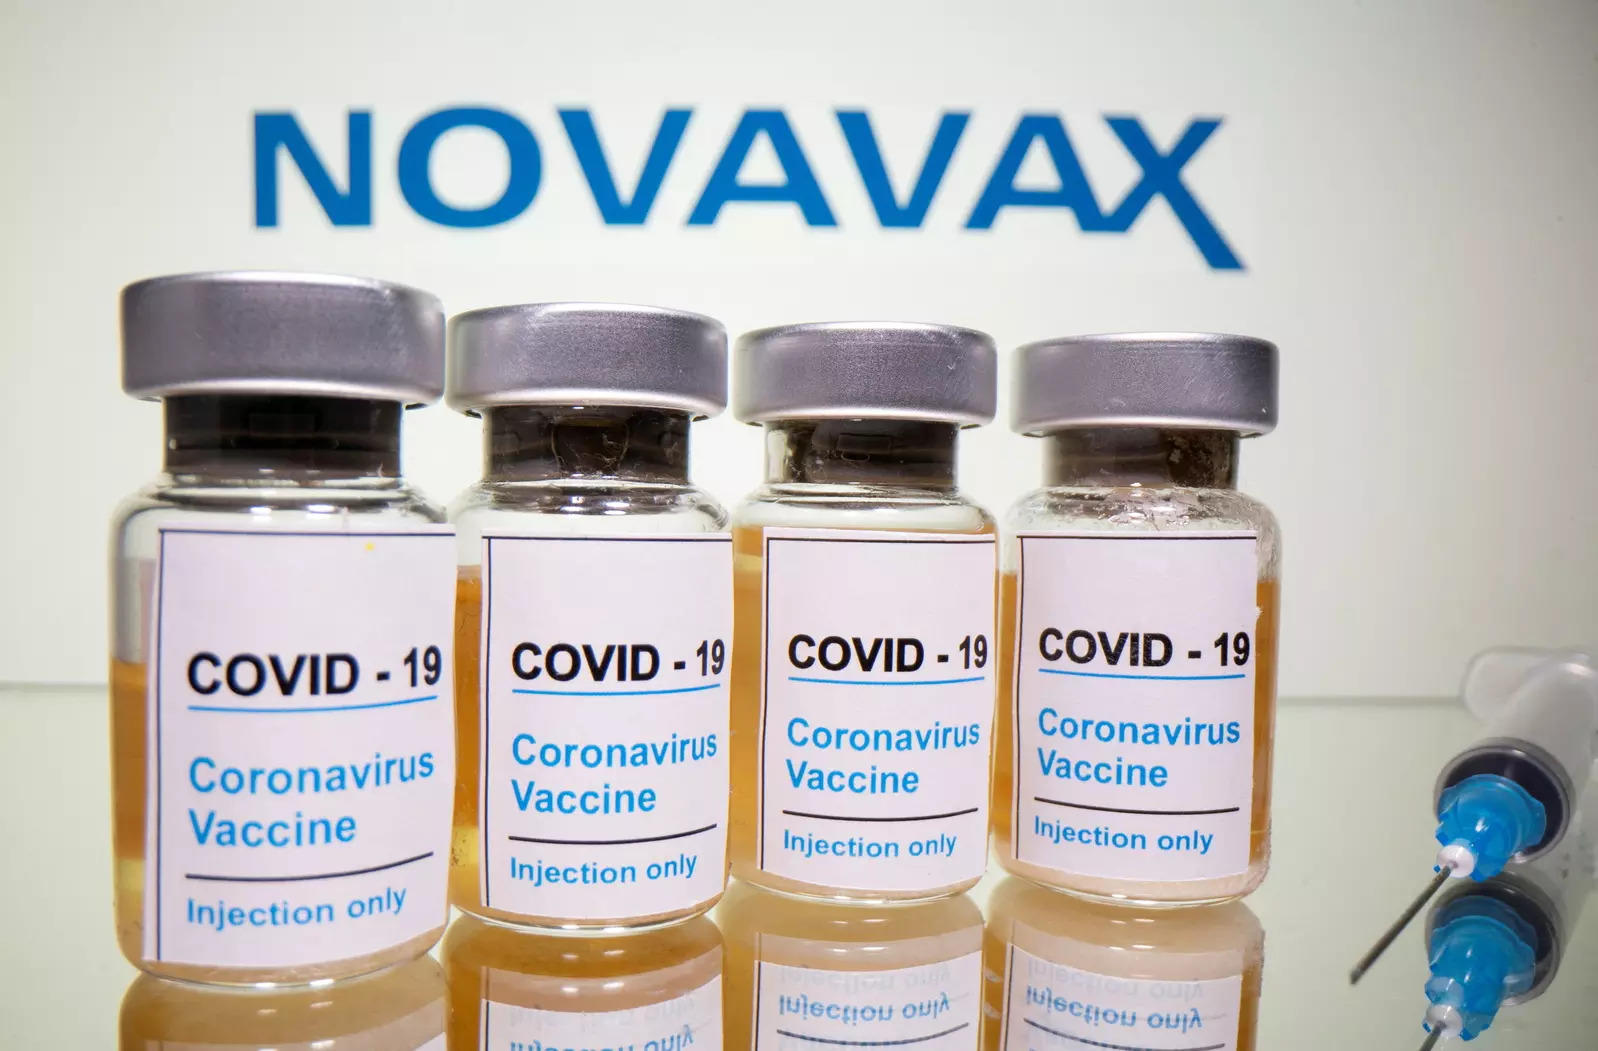 کارشناسان WHO دوز سوم واکسن کووید Novavax را برای افرادی که مشکلات سلامتی دارند توصیه می کنند